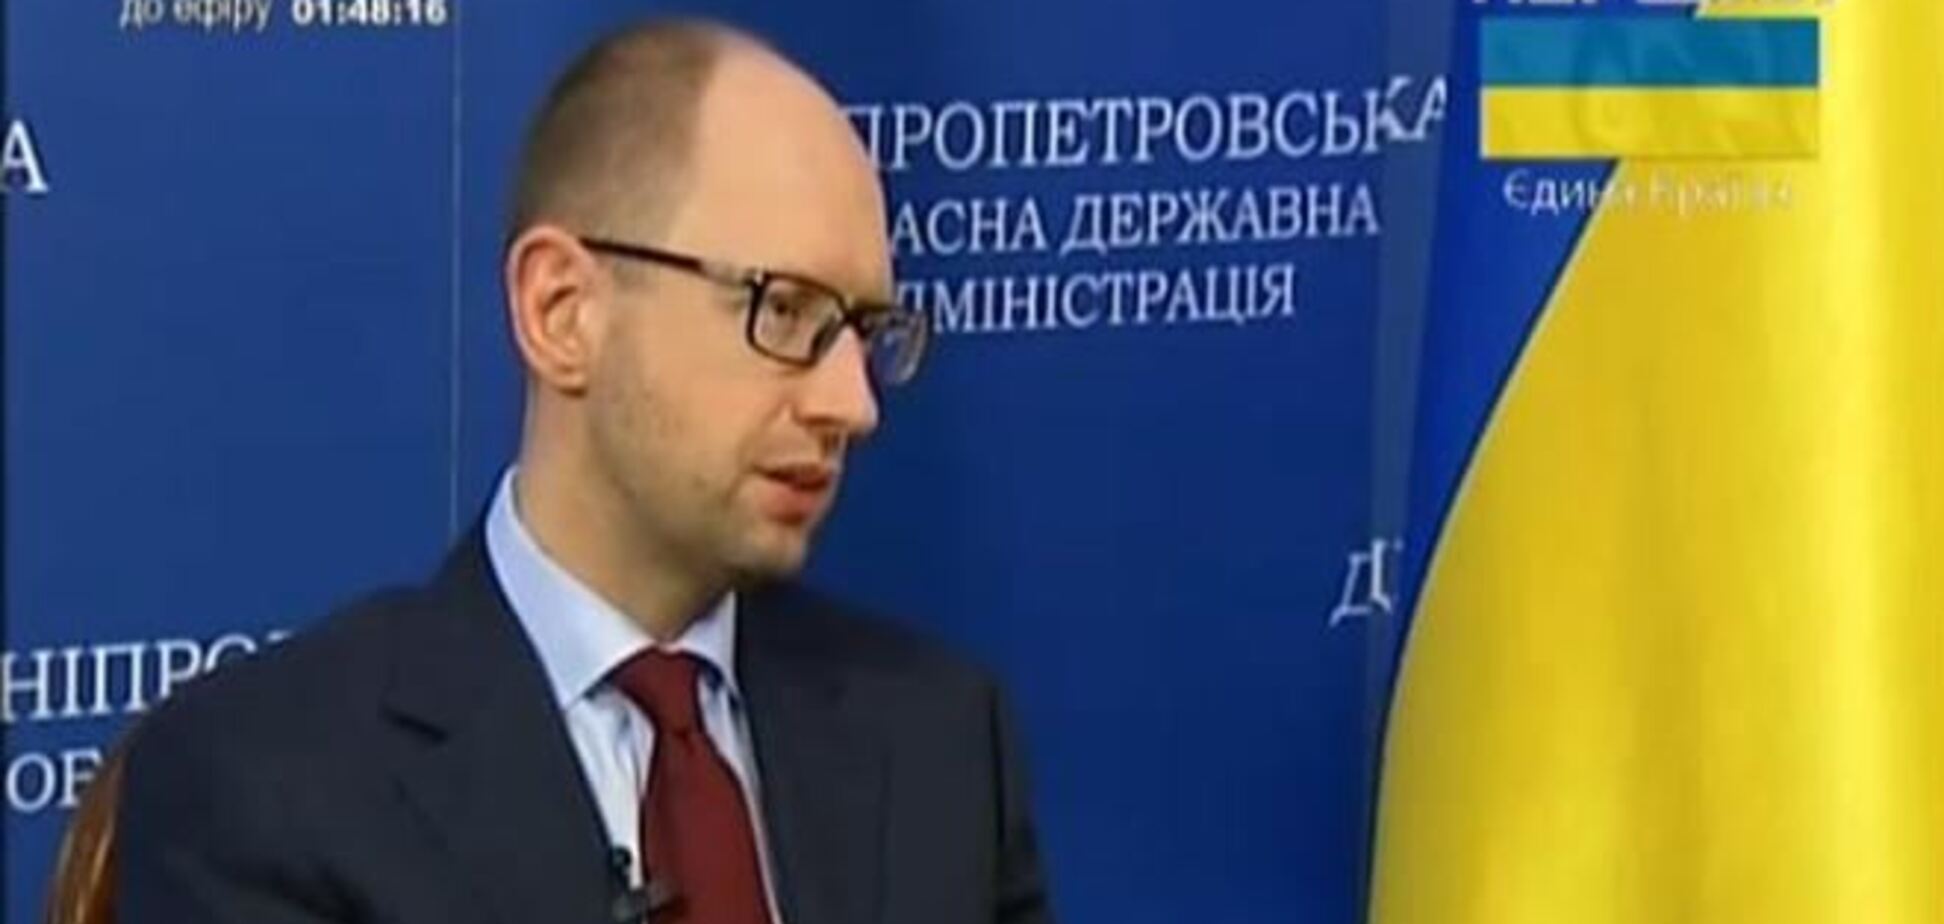 Яценюк: ті, хто говорить про федералізацію України, хоче мати маленьких Януковичів у кожній області